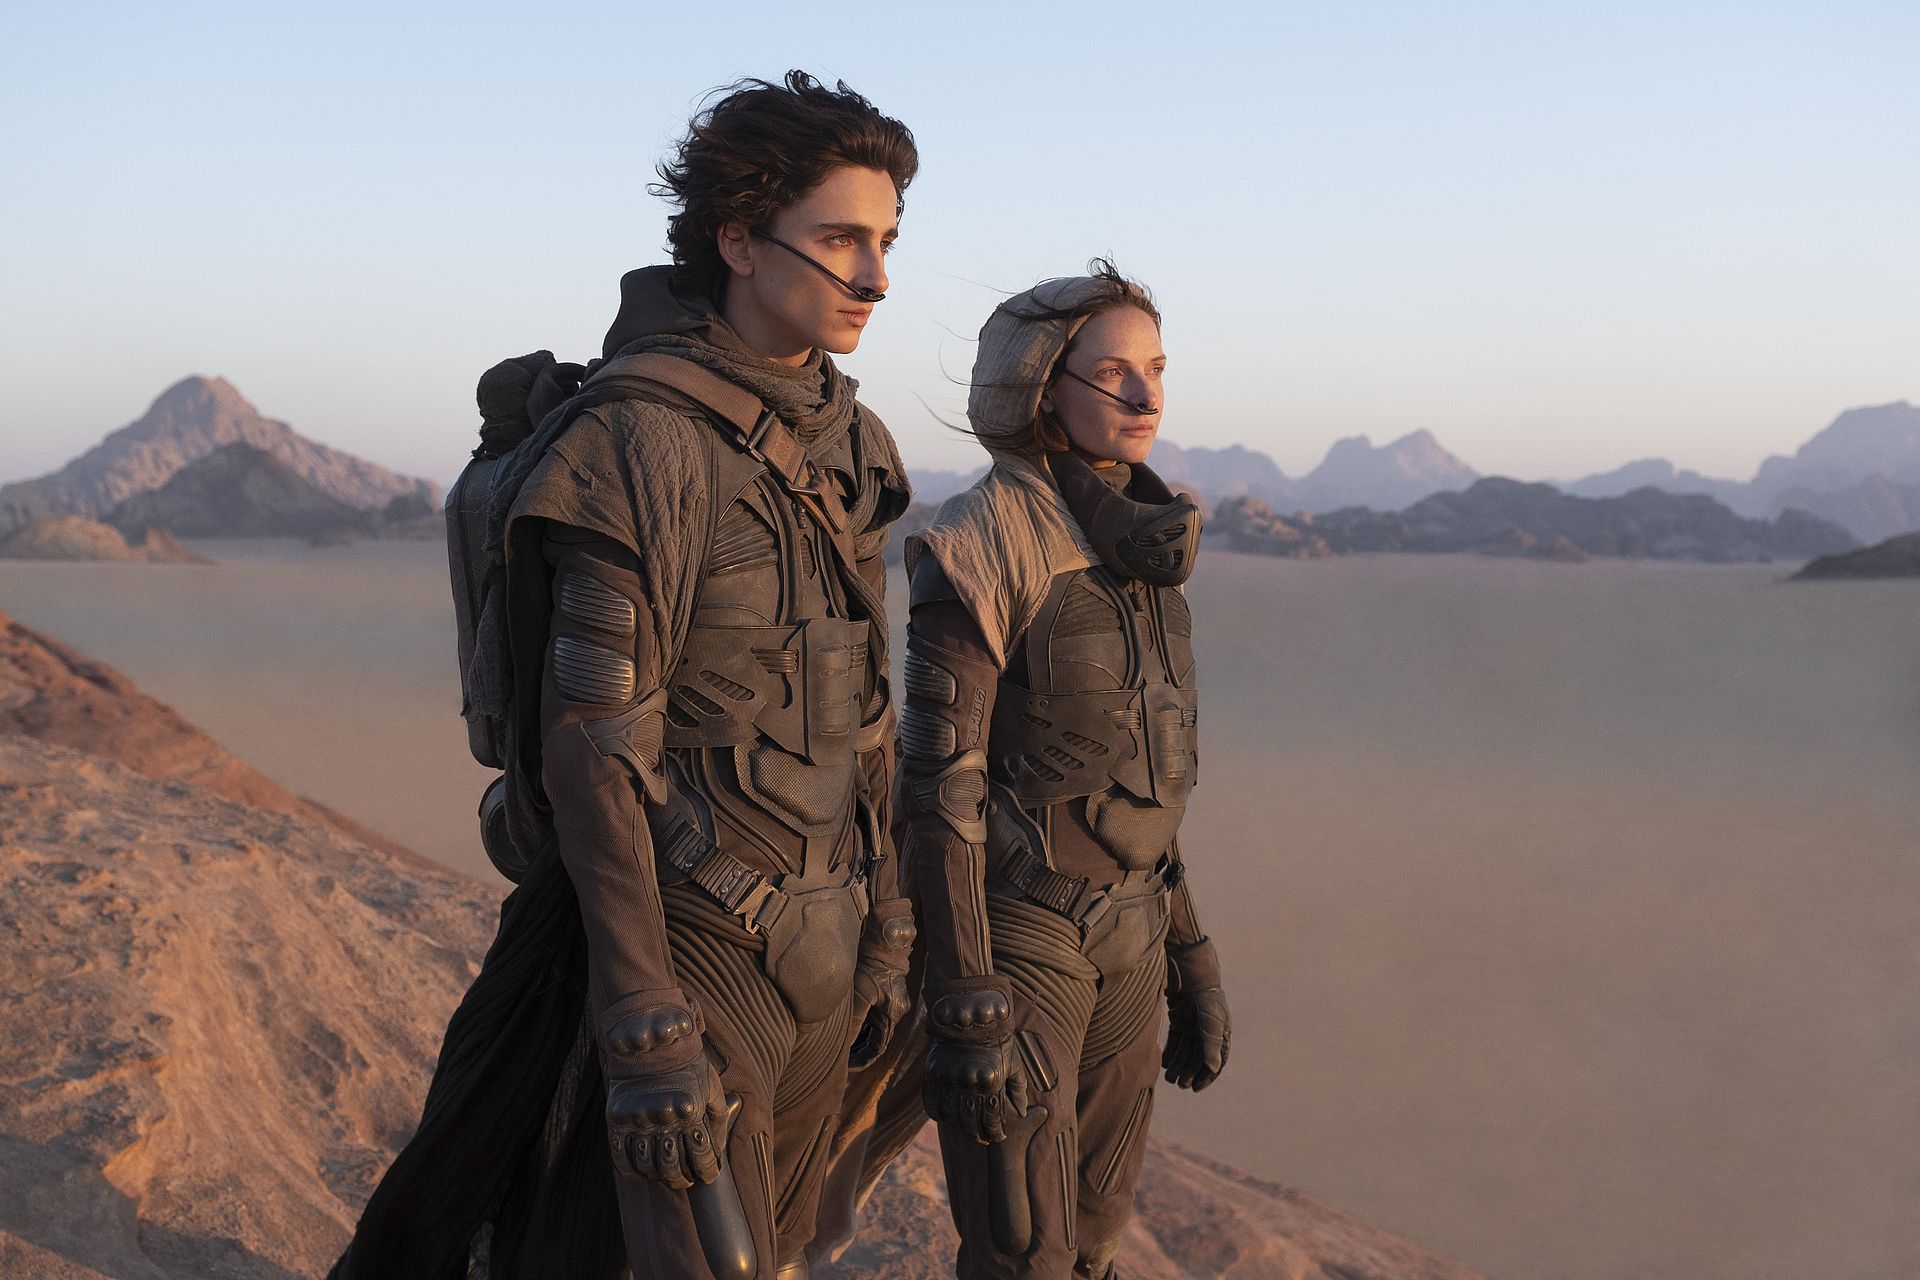 Lees ook: Film 'Dune' is eindelijk een overtuigende sf-klassieker